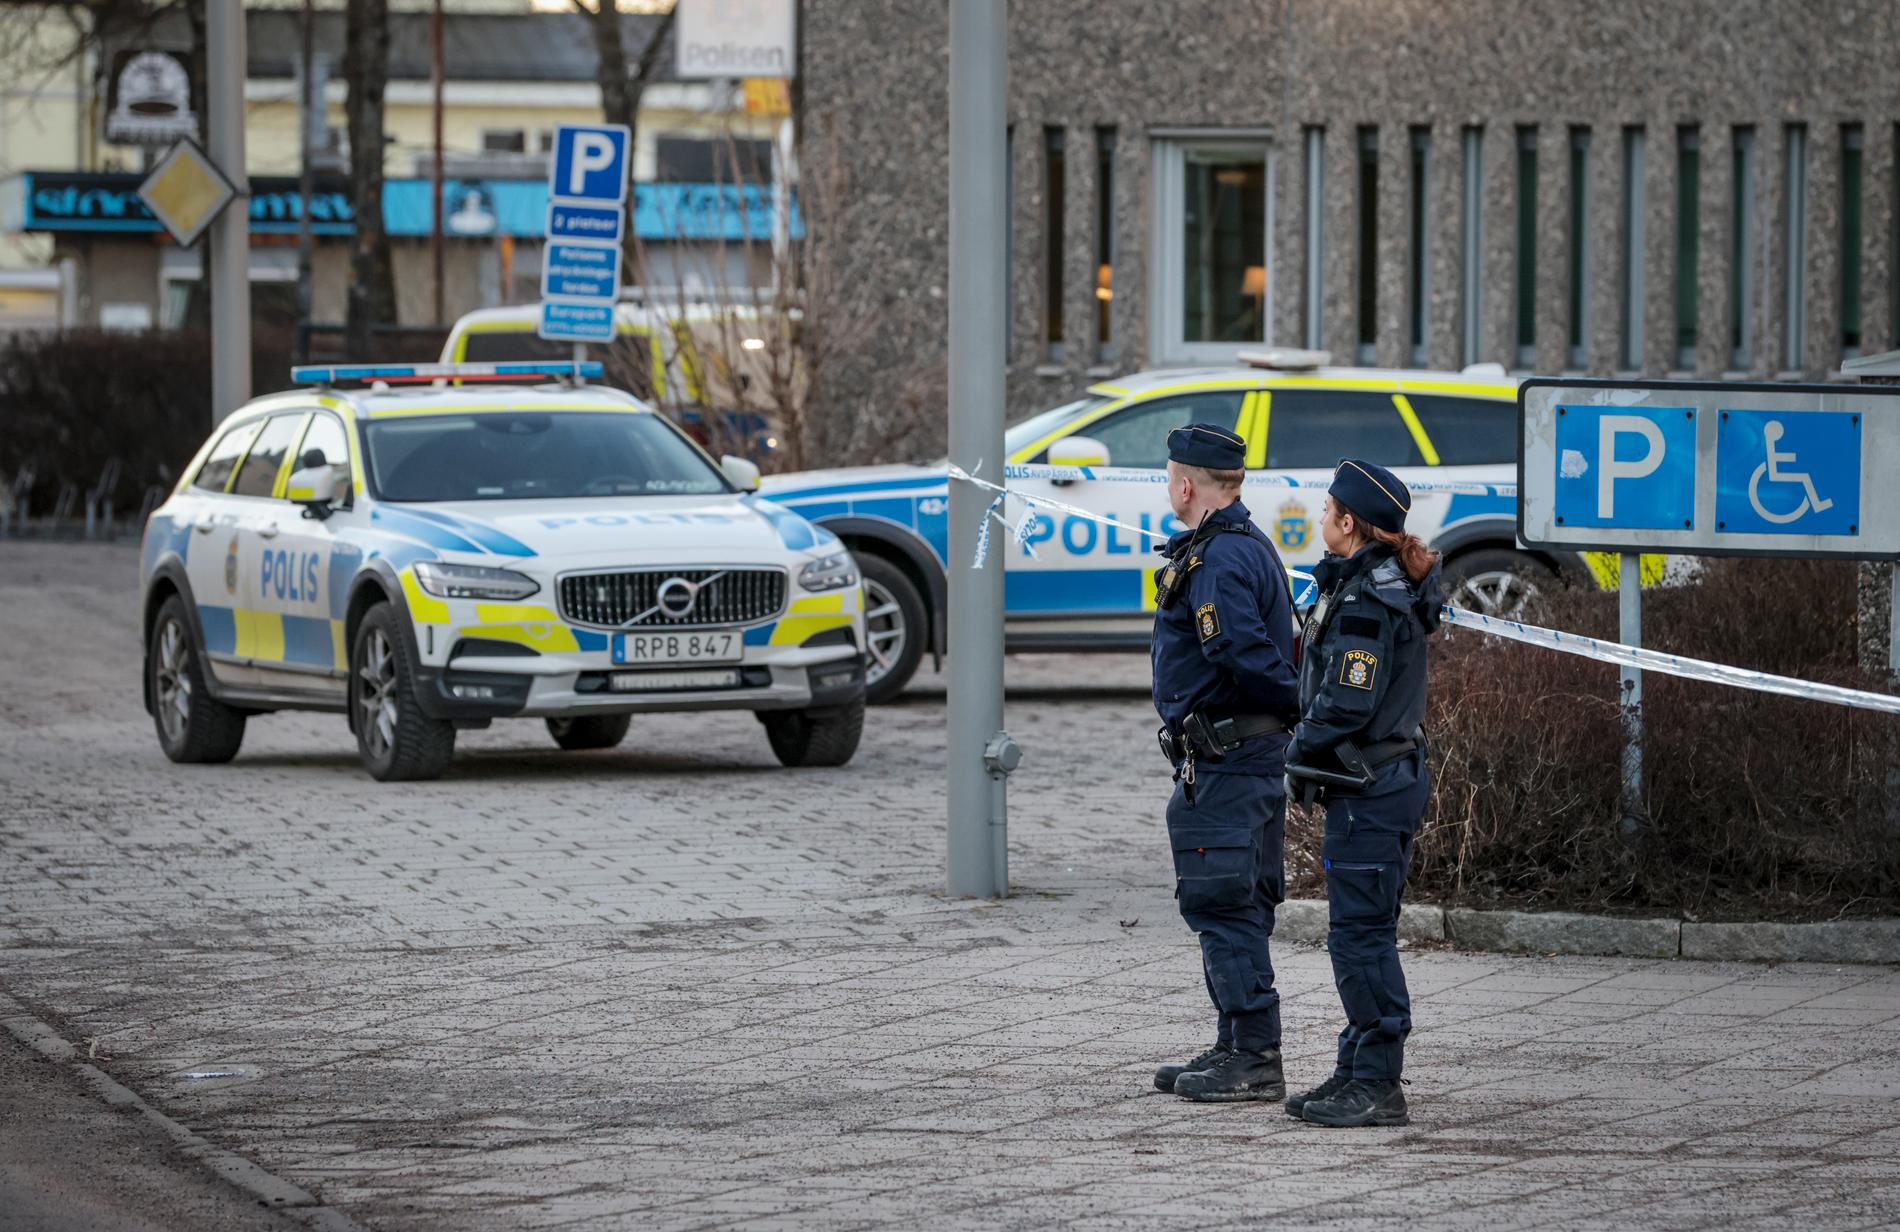 Polis och avspärrning utanför polishuset i Norrköping.